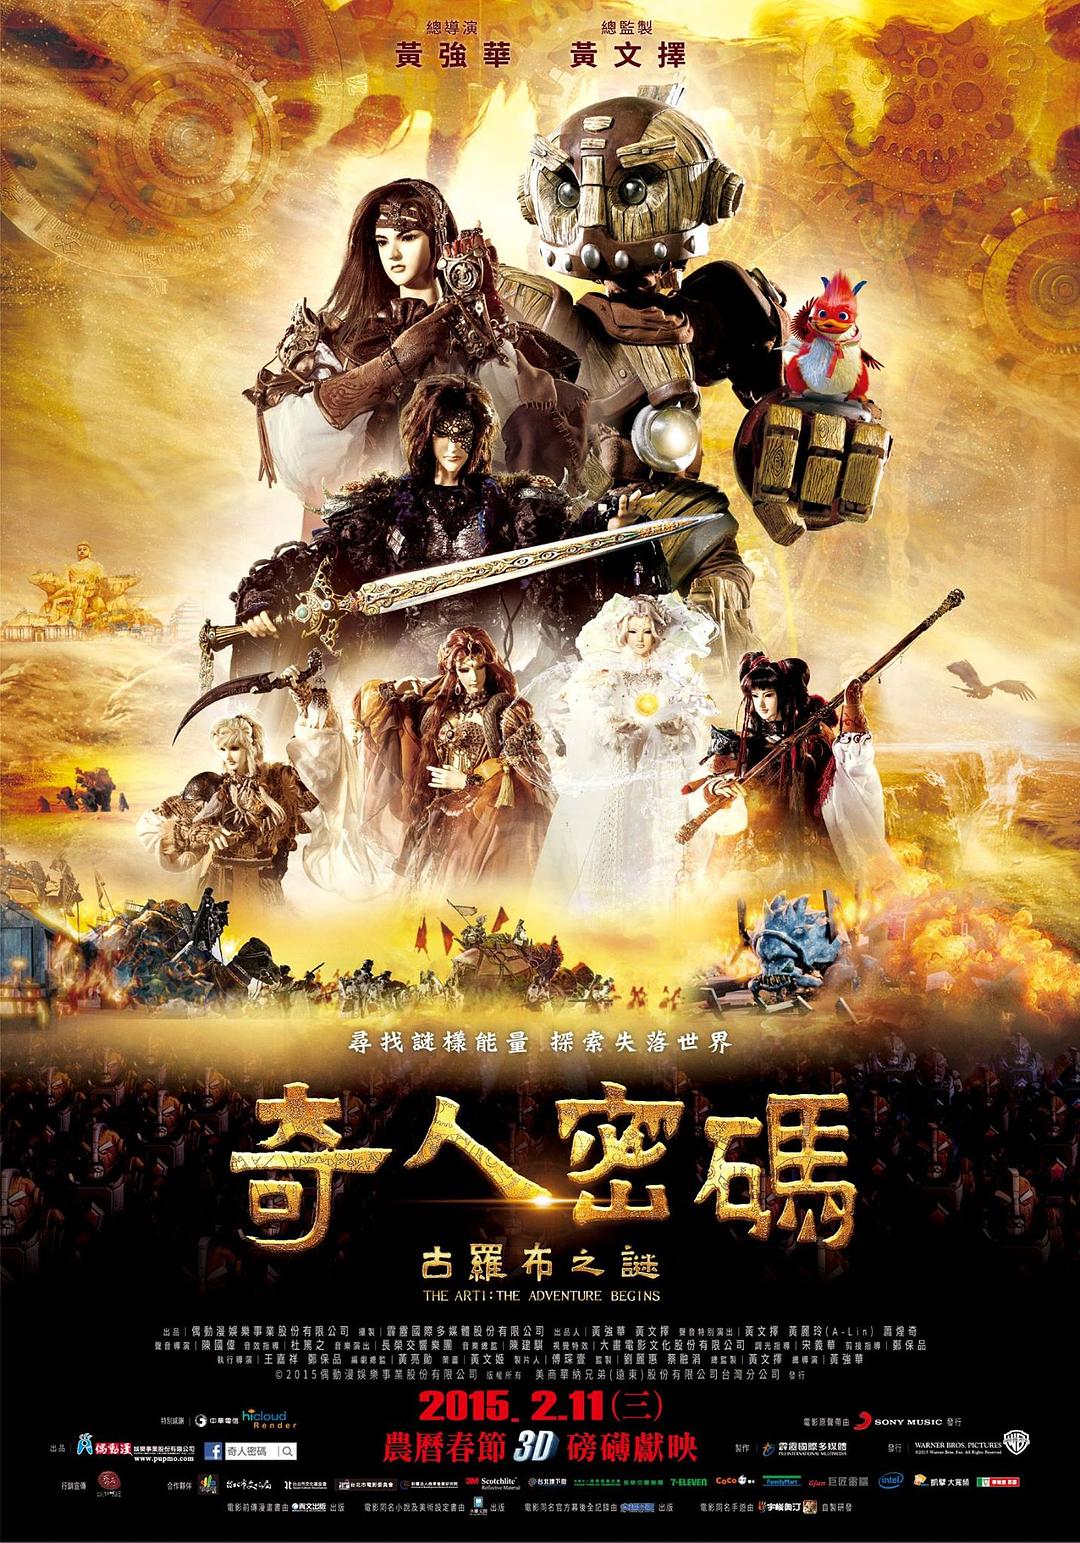 奇人密码:古罗布之迷 The.Arti.The.Adventure.Begins.2015.CHINESE.1080p.BluRay.x264.DTS-EPiC 8.93GB-1.jpg